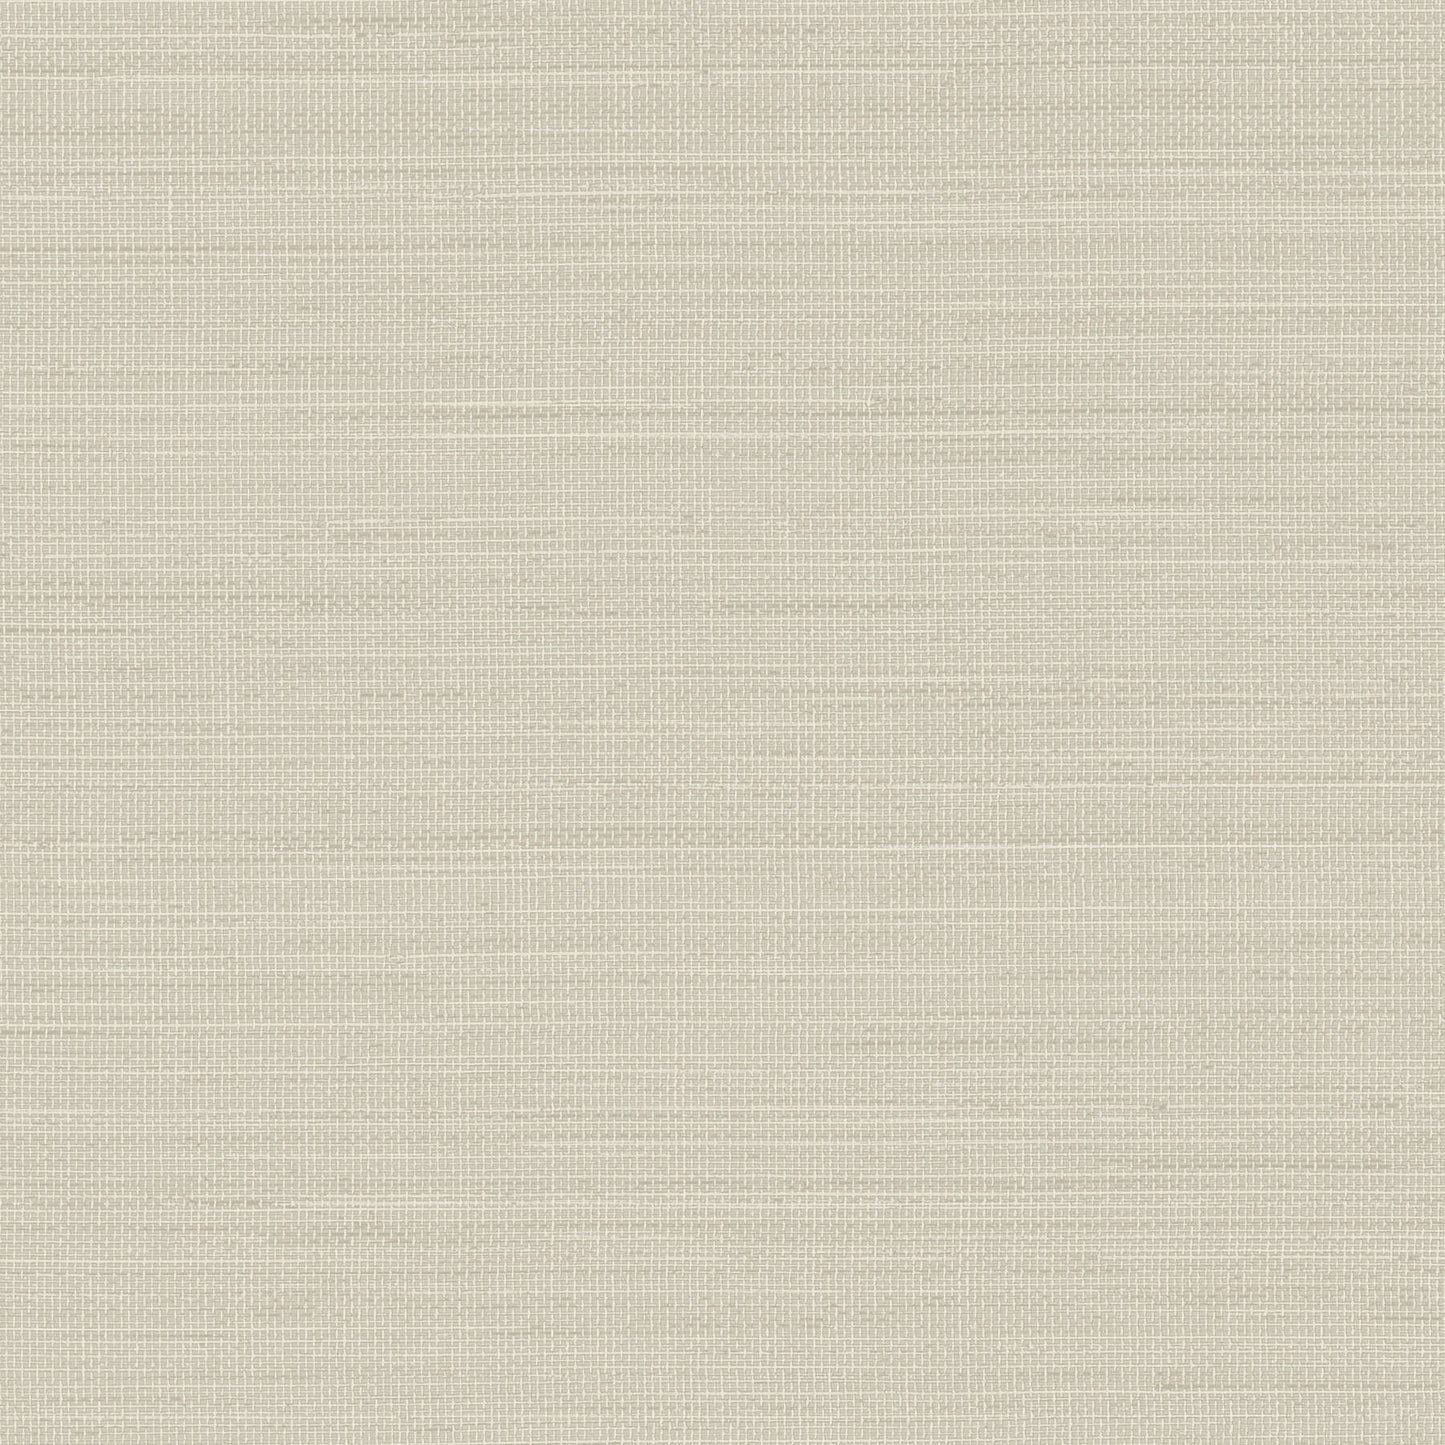 Chesapeake Blue Heron Spinnaker Netting Wallpaper - Light Grey